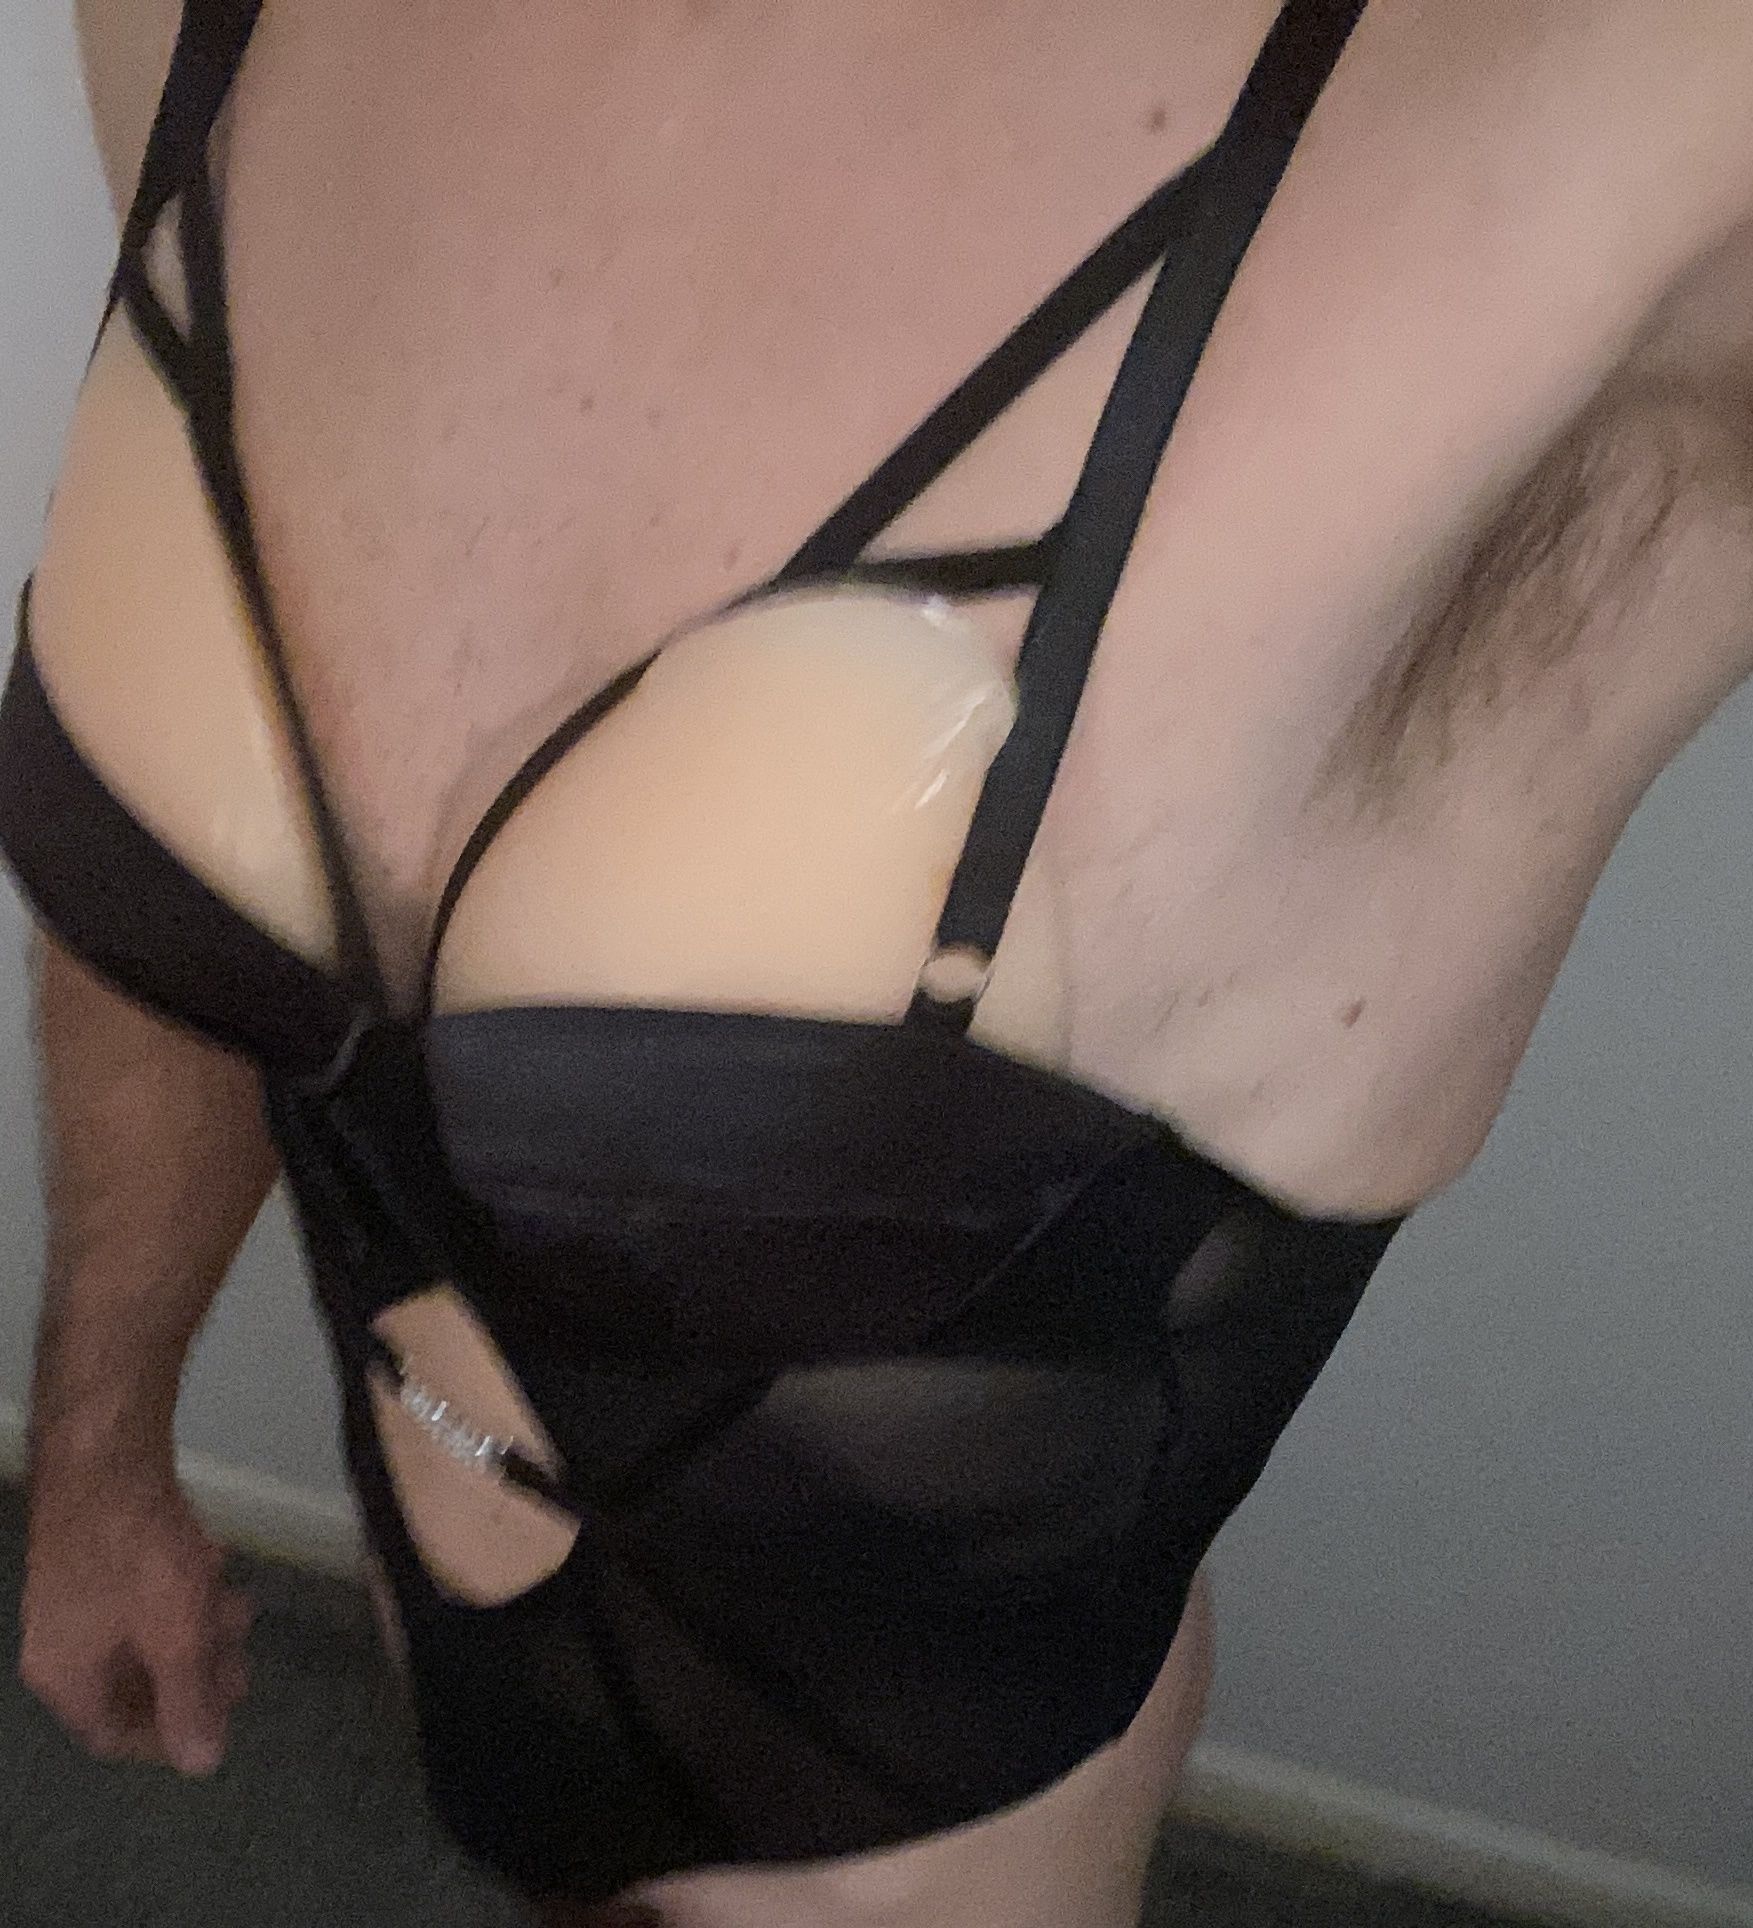 New black lingerie try on